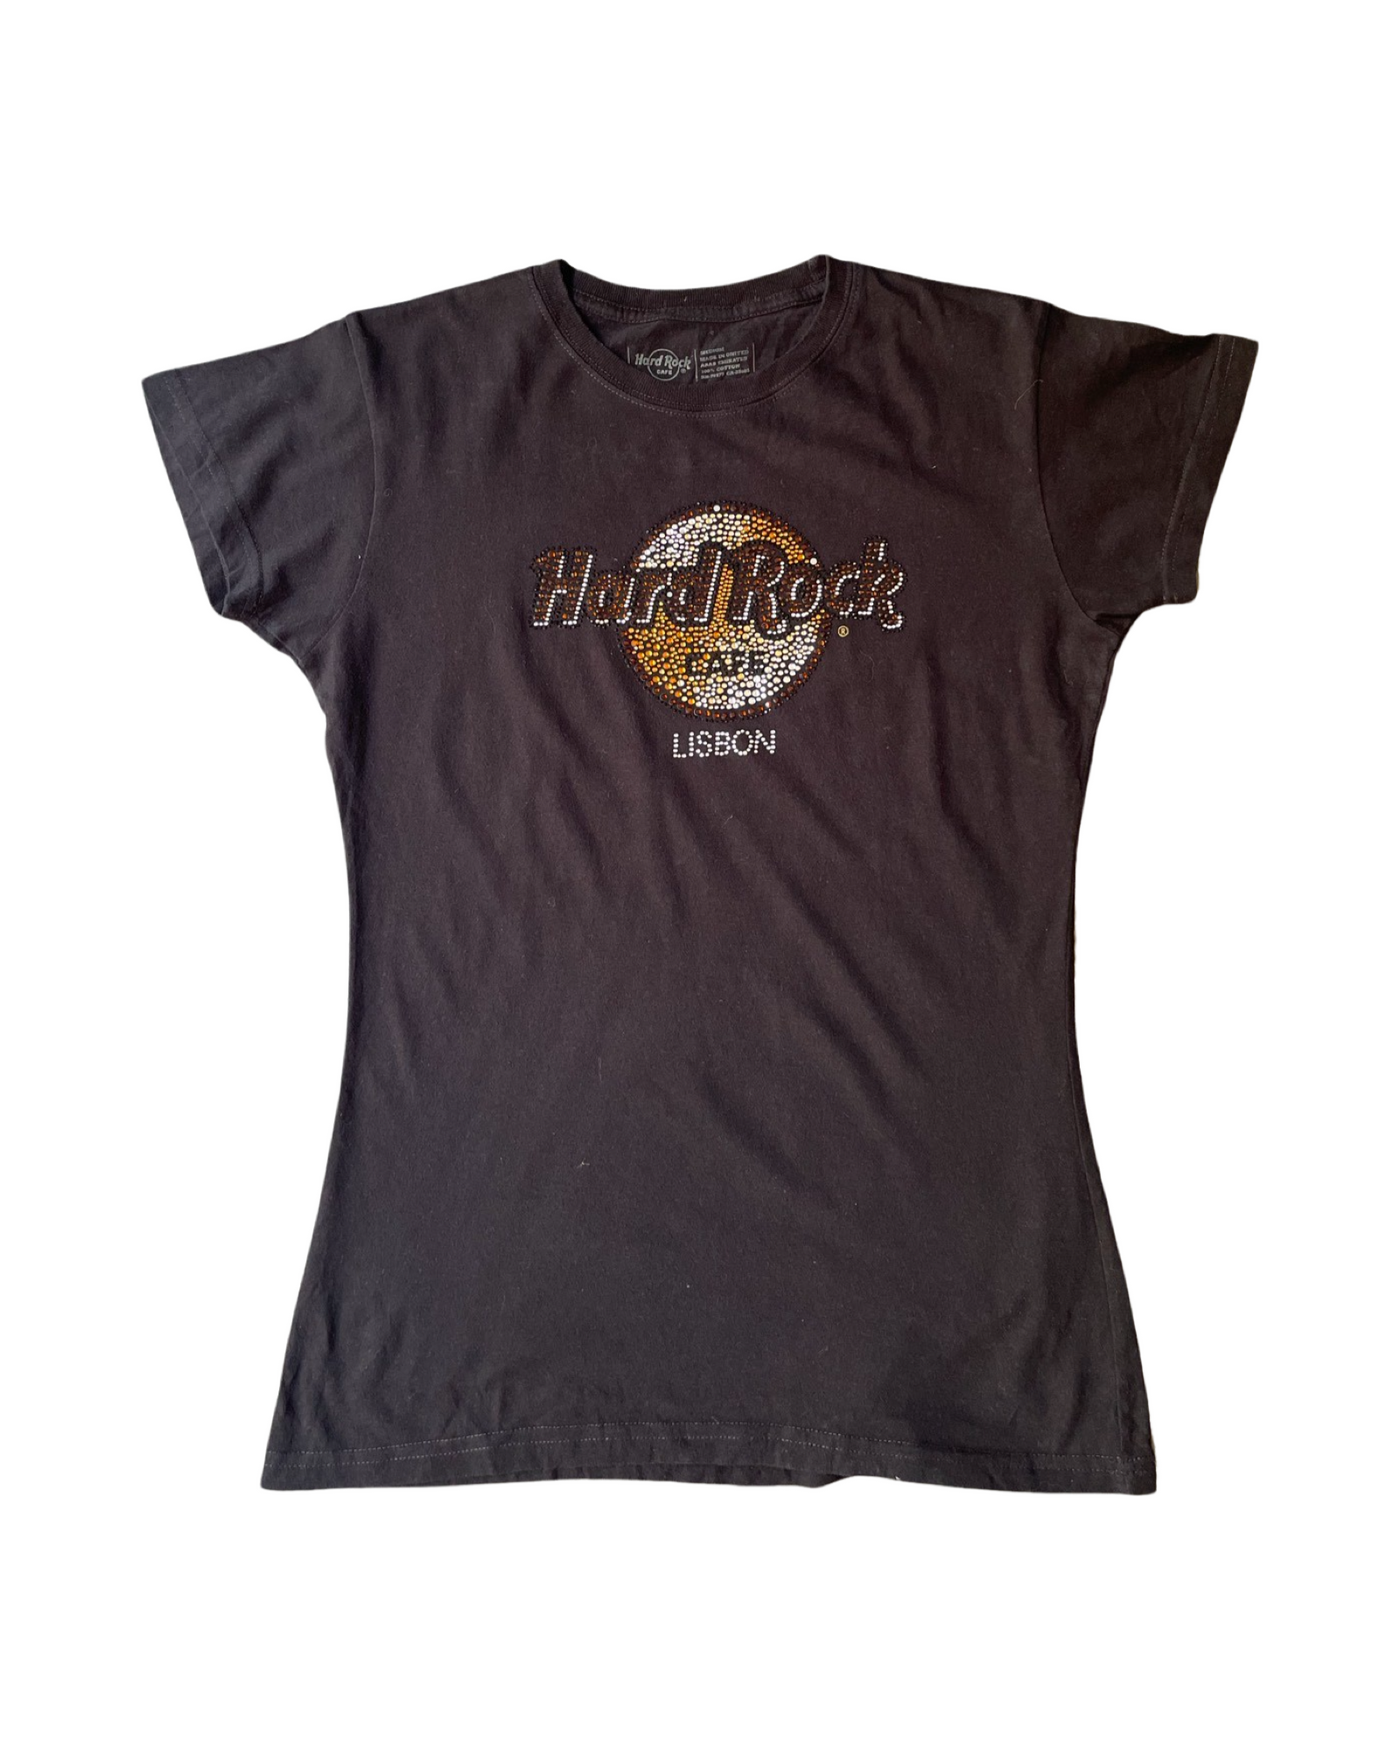 Vintage Hard Rock Cafe Lisbon T-Shirt